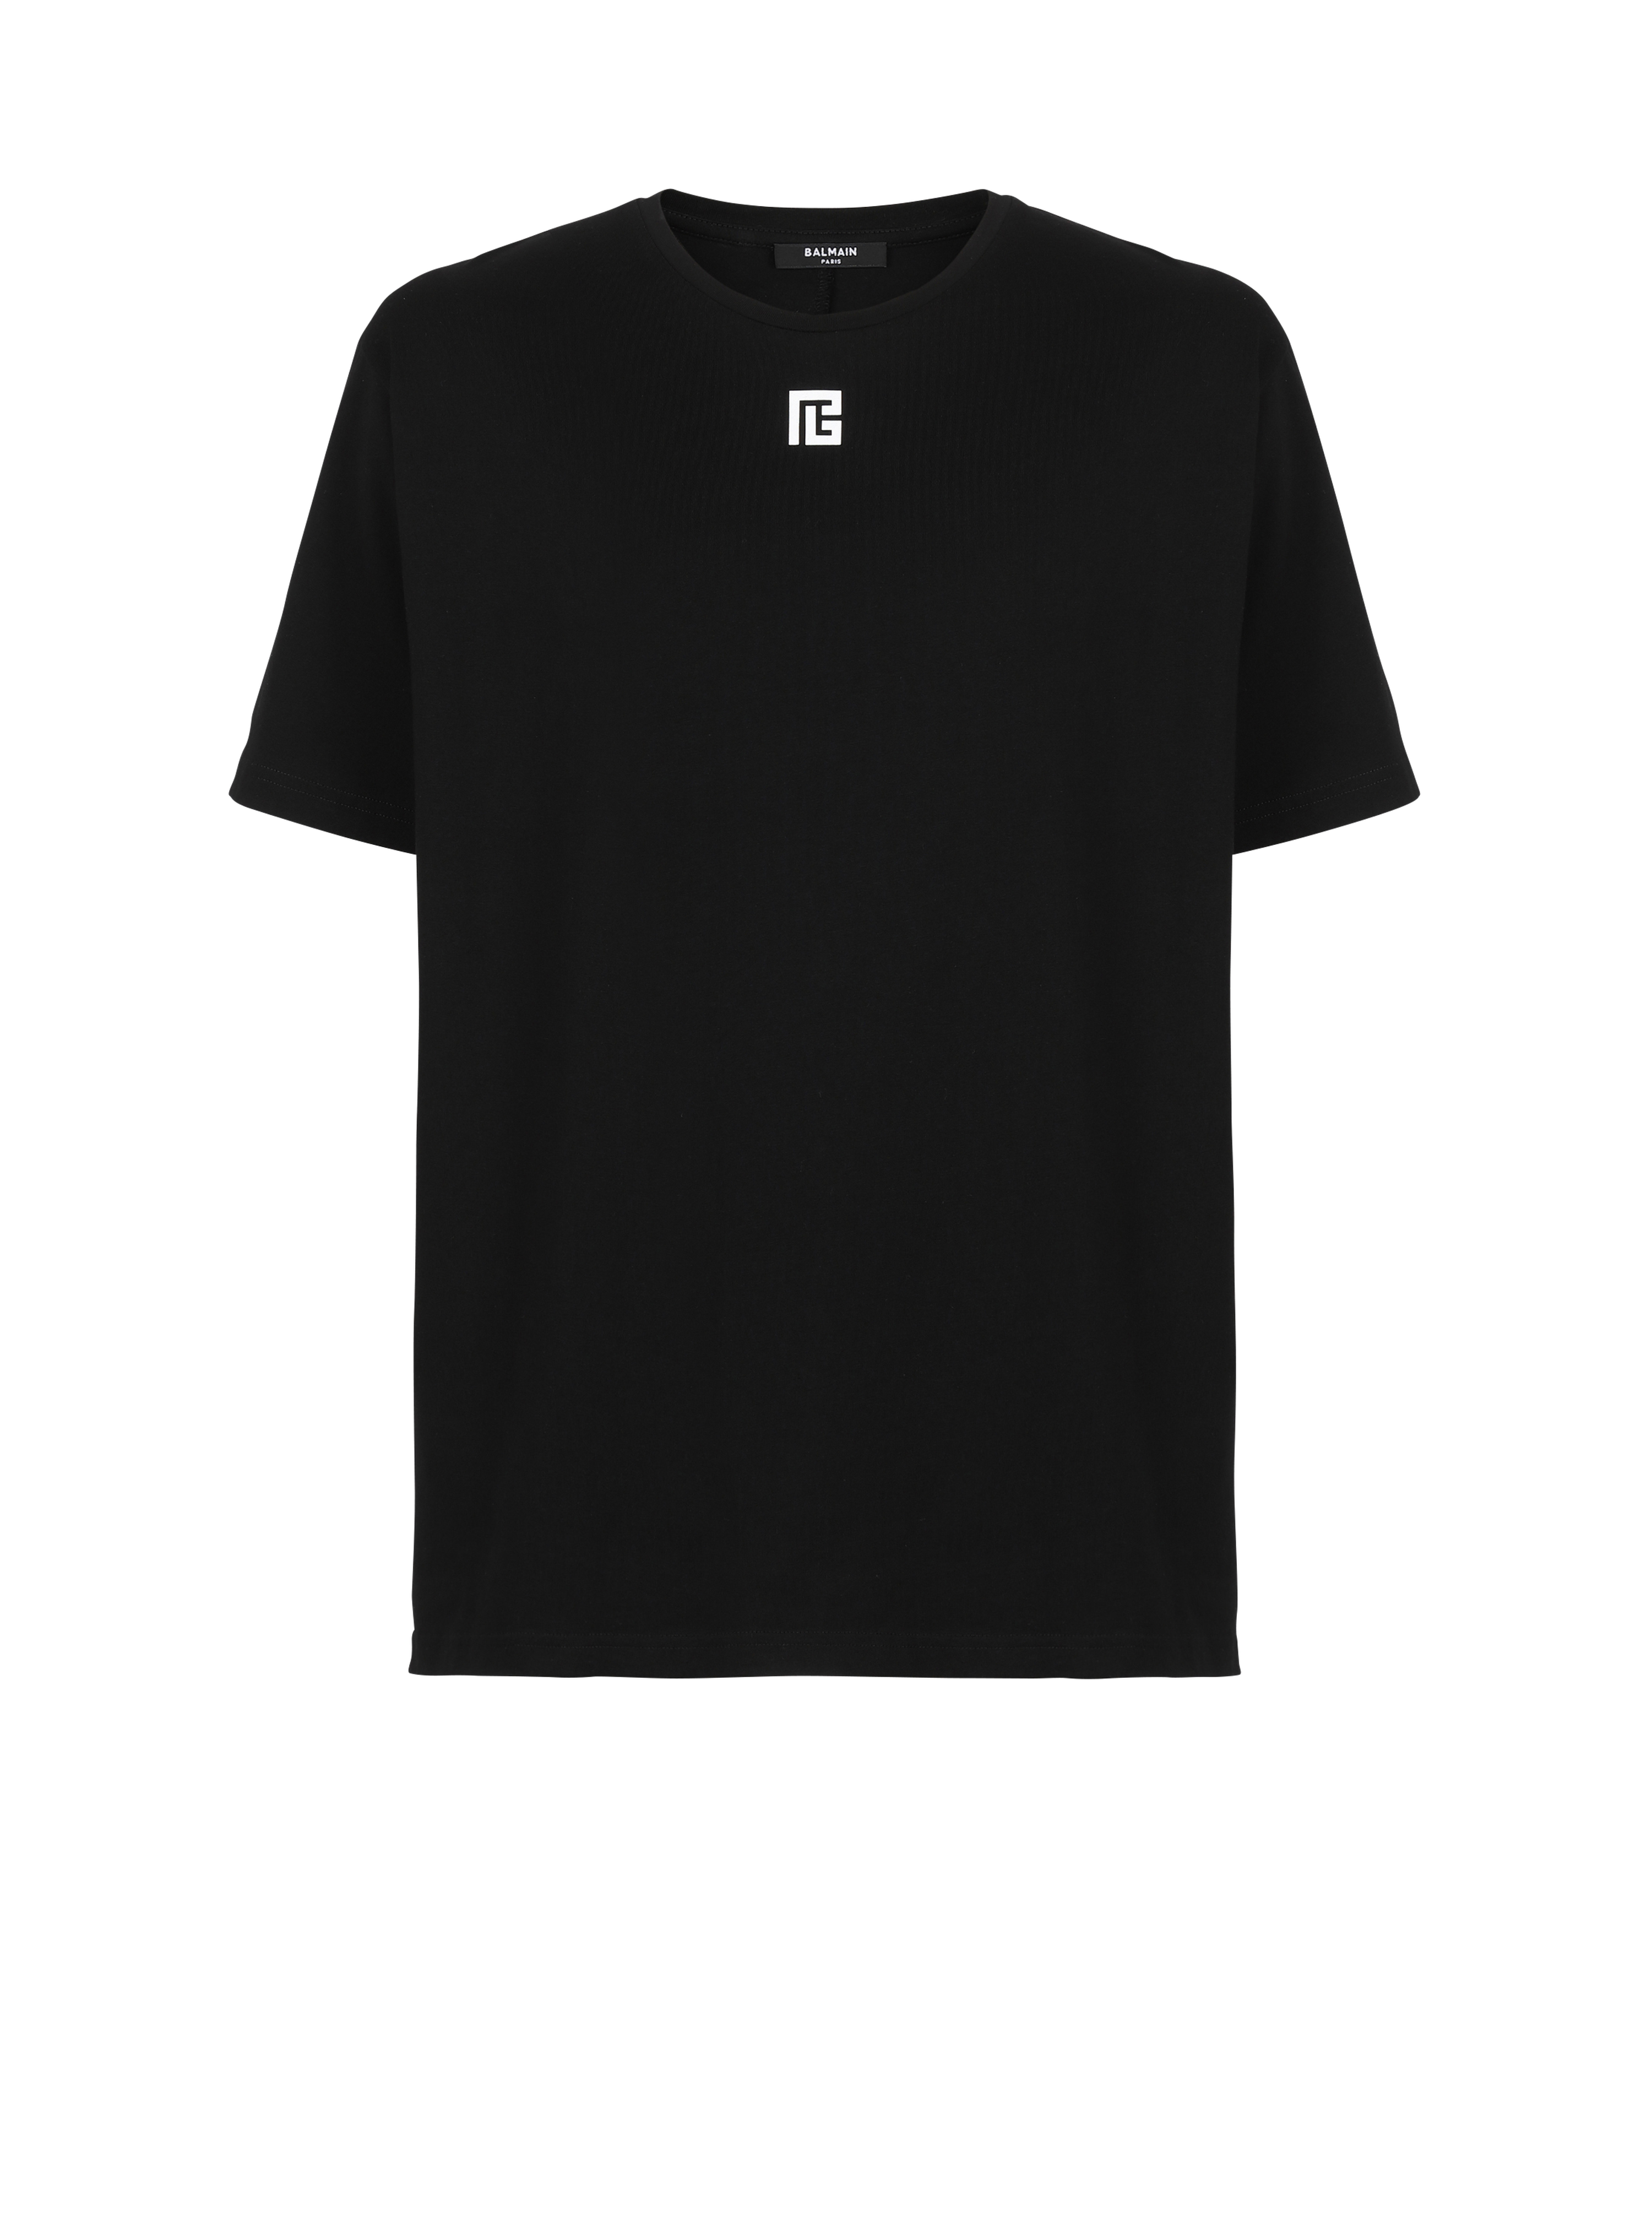 T-shirt oversize en coton imprimé maxi logo Balmain, noir